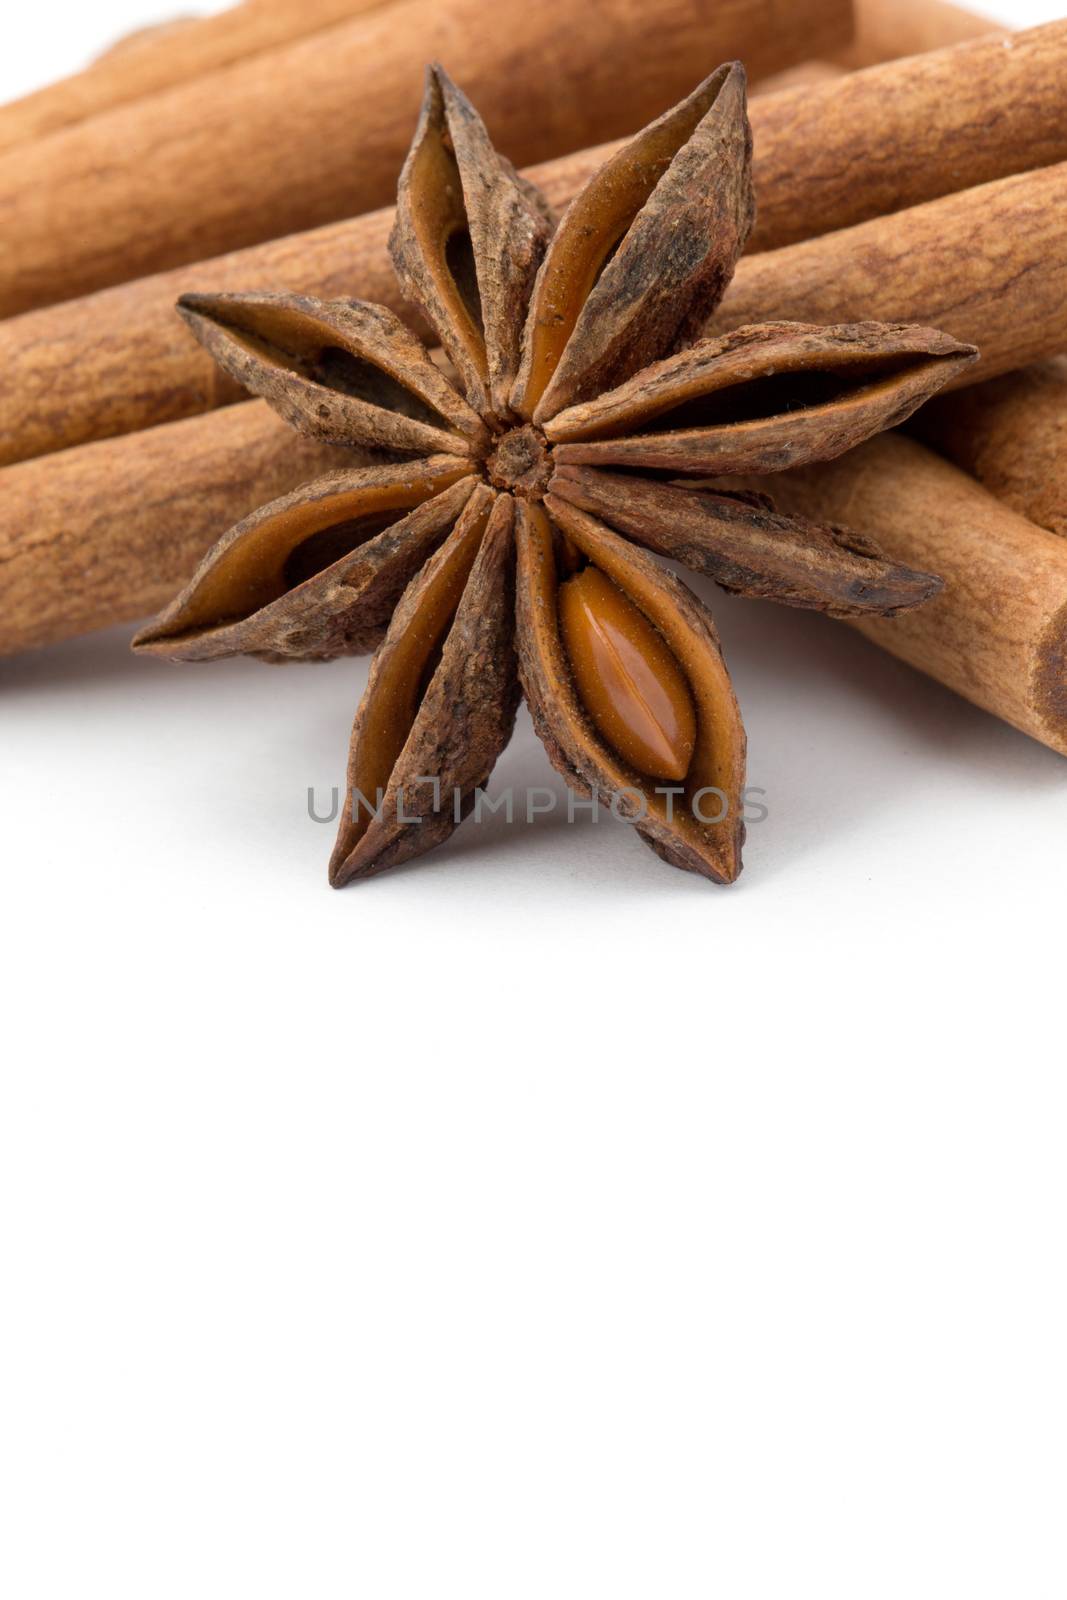  anise and cinnamon  by Pakhnyushchyy